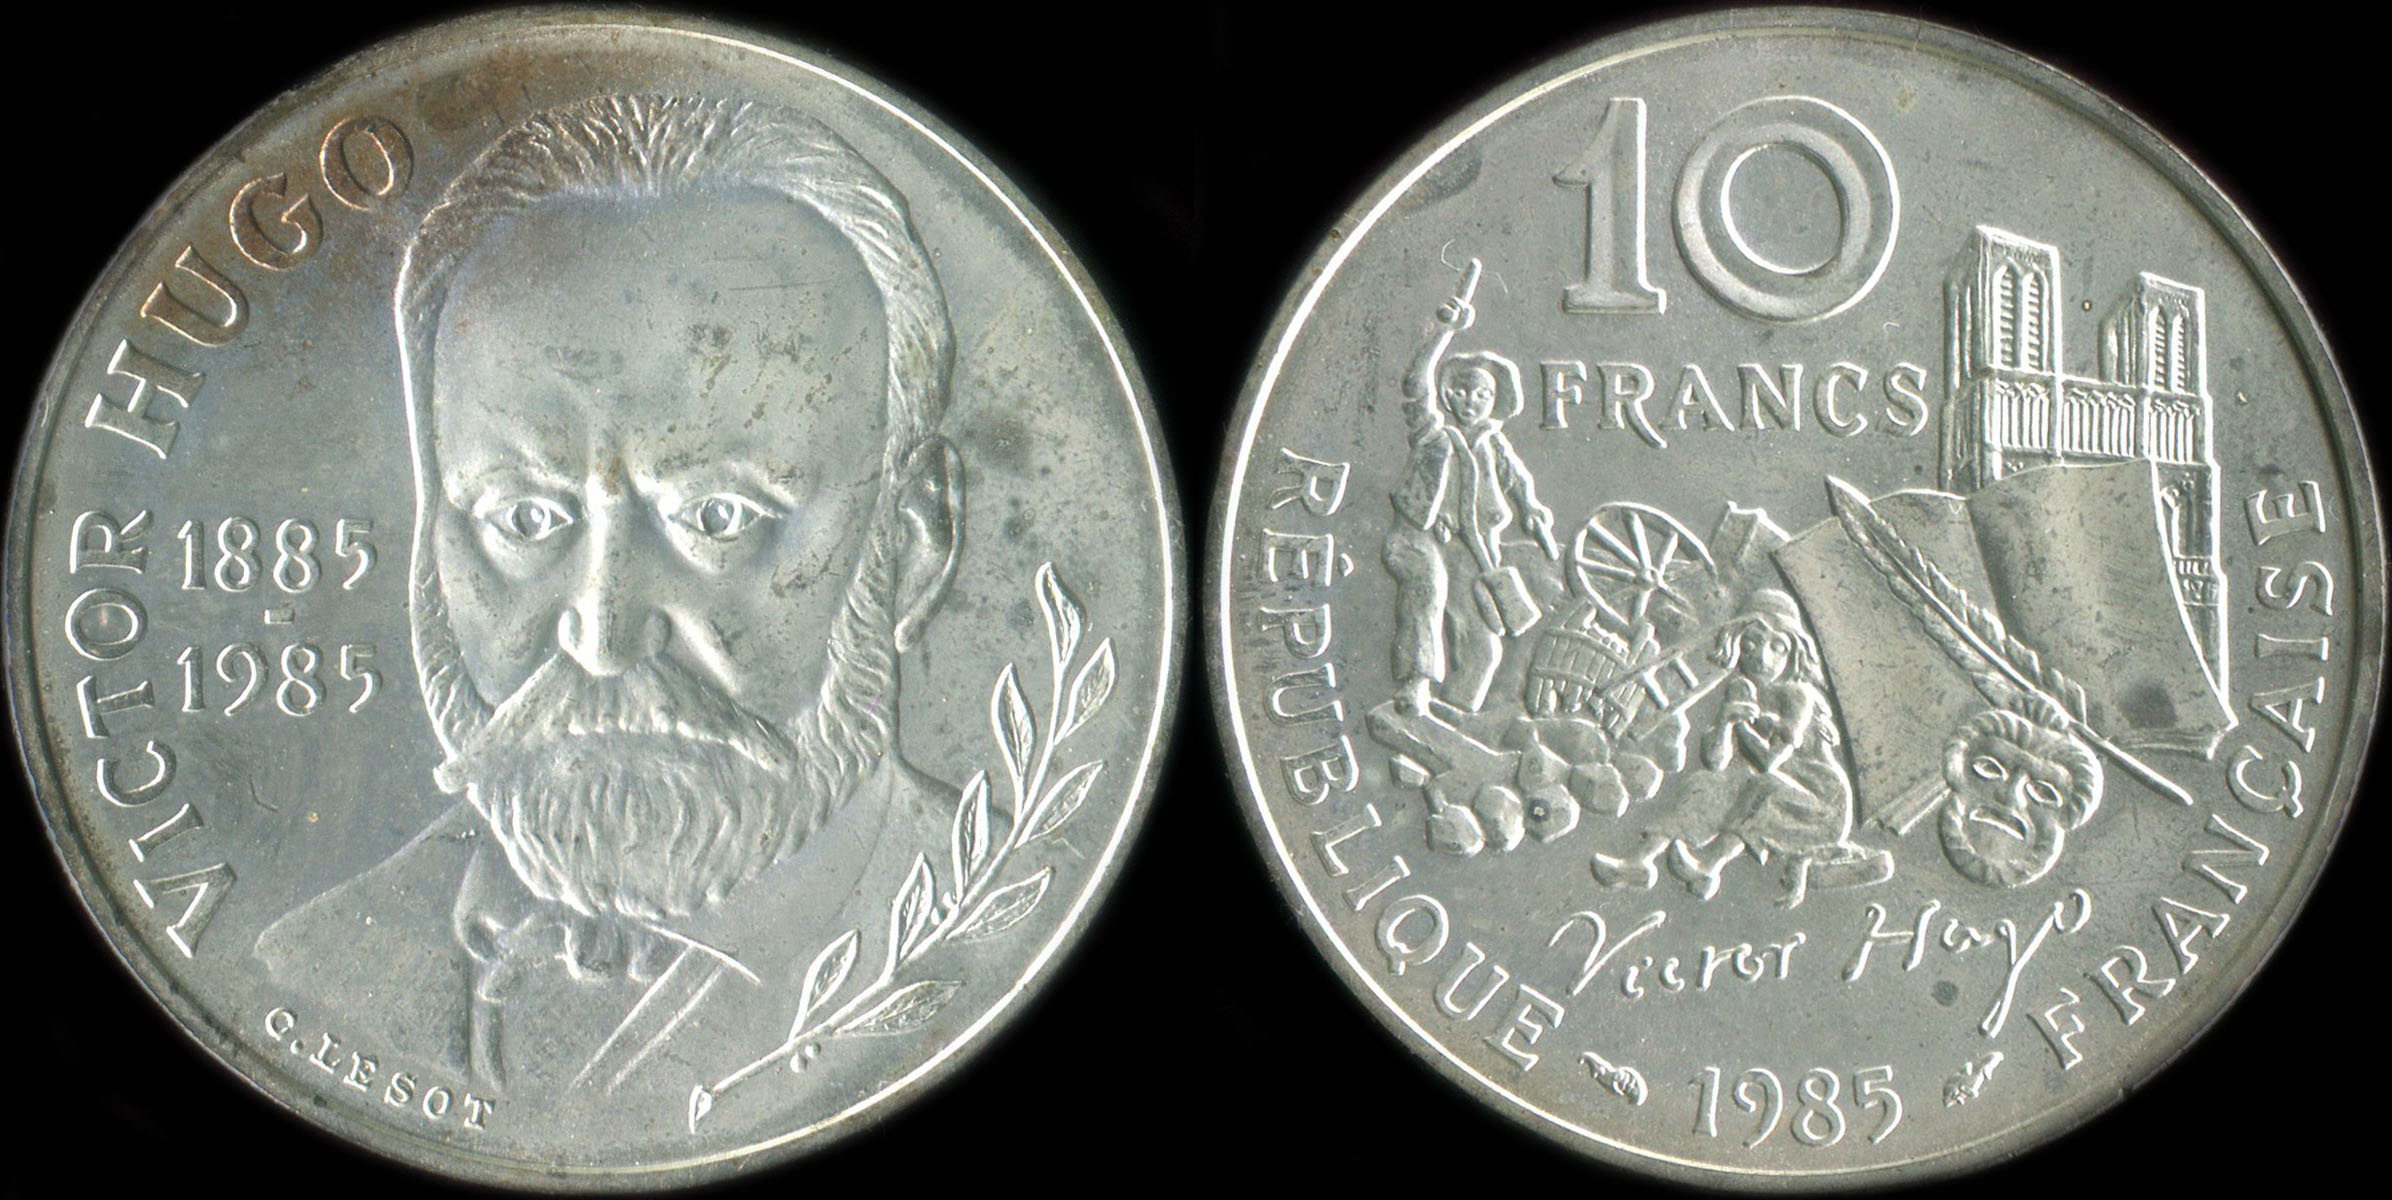 Pièce de 10 francs Victor Hugo 1985 argent BU